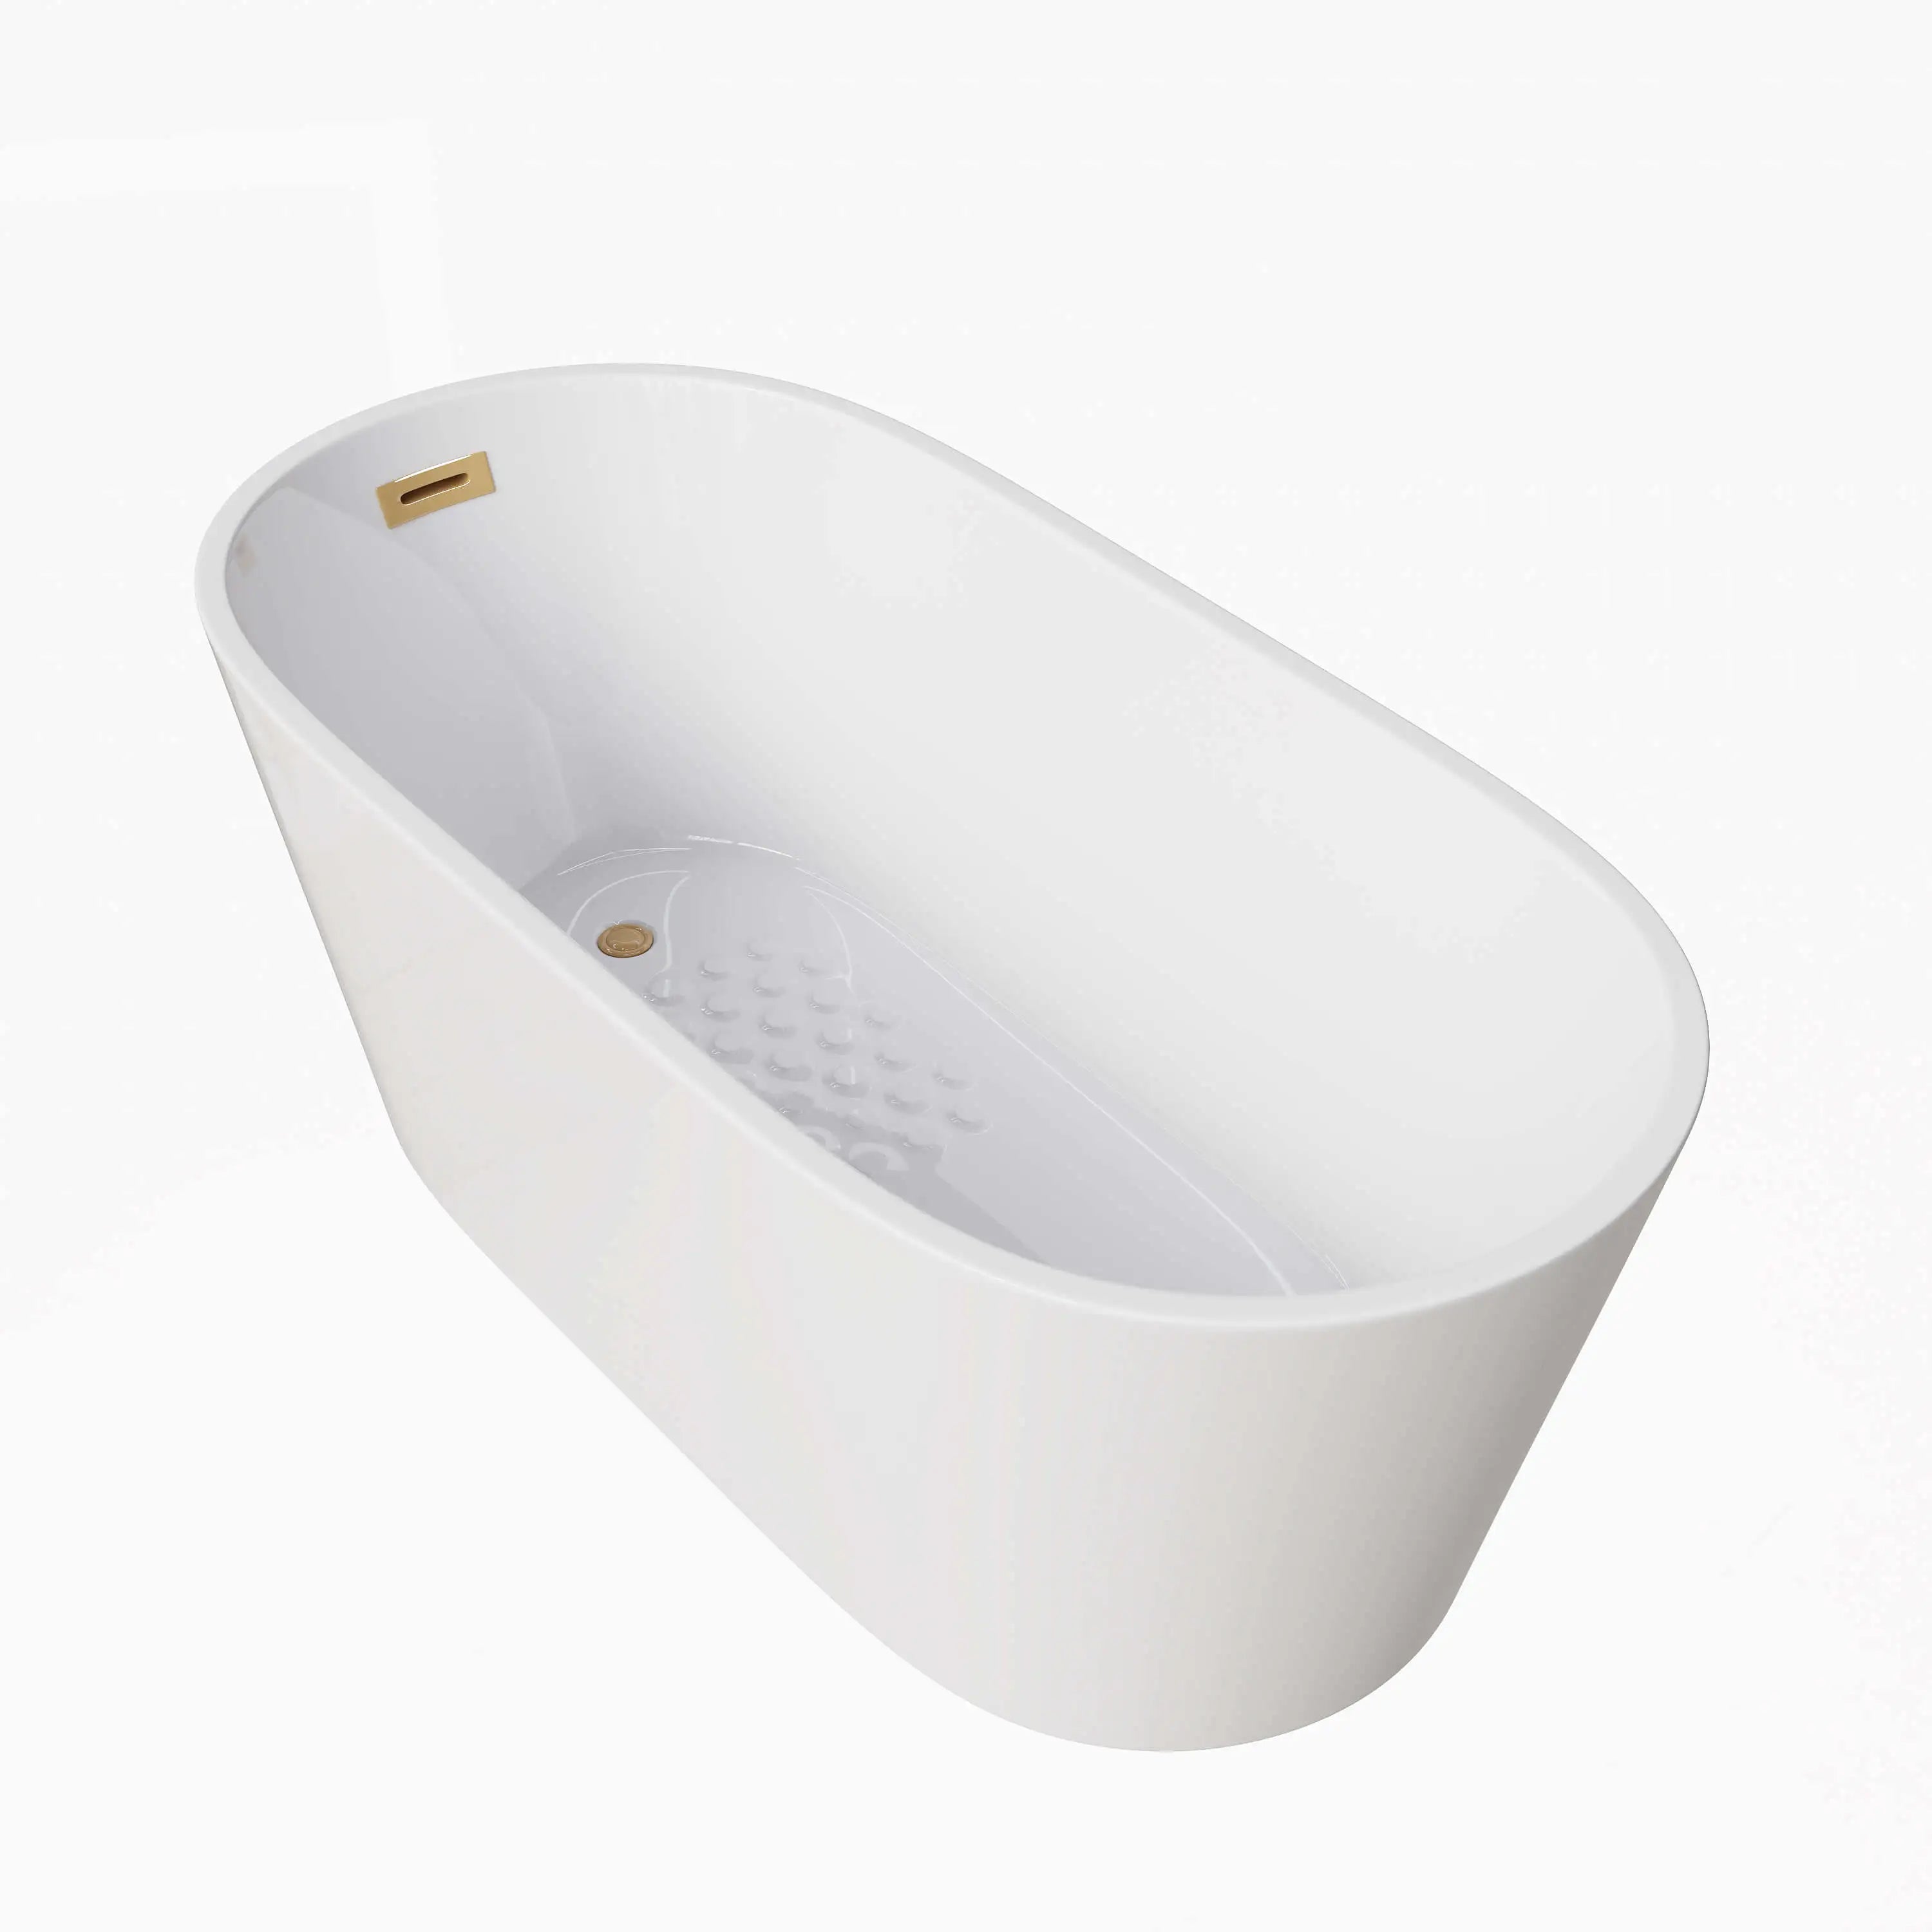 HOROW 59 Inch Acrylic Free Standing Bathtub Deep Soaking Bathtub Model TU59-SG